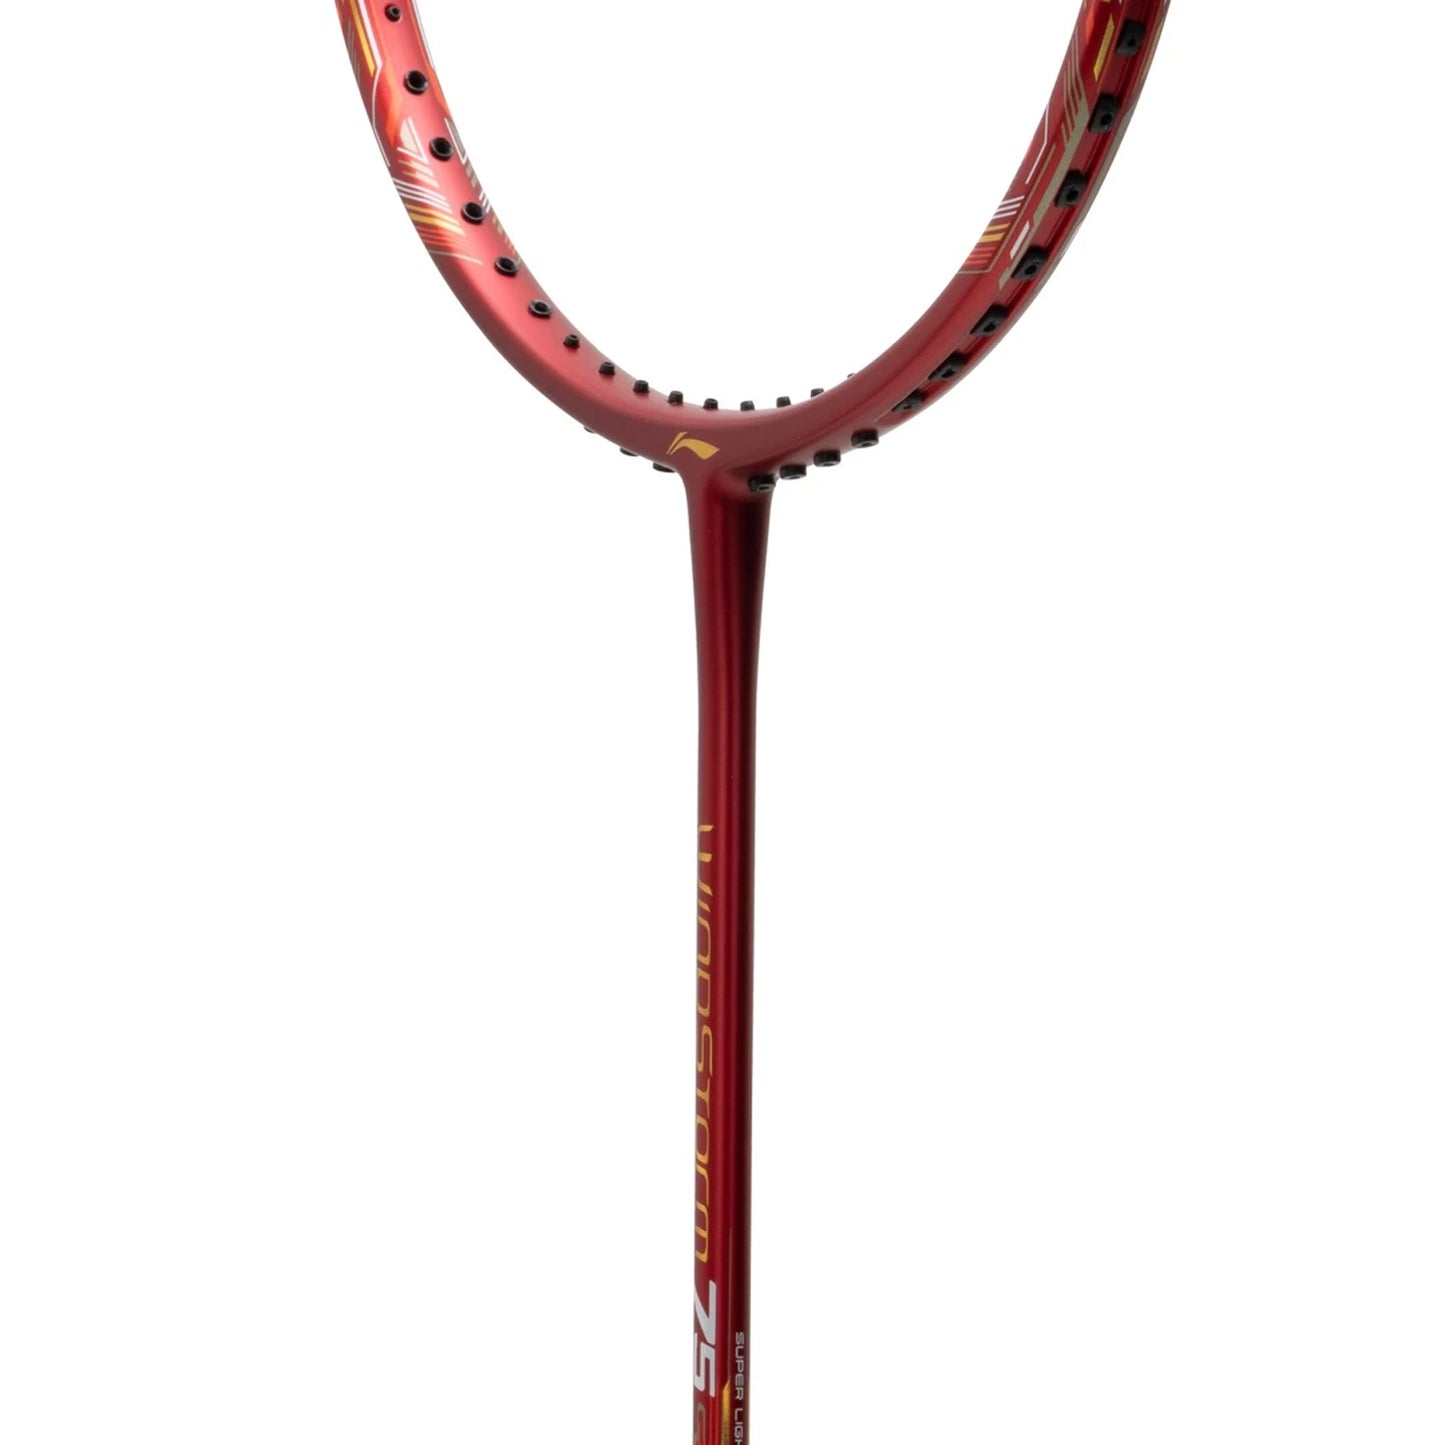 Li-Ning Windstorm 75 S Unstrung Badminton Racquet - Best Price online Prokicksports.com